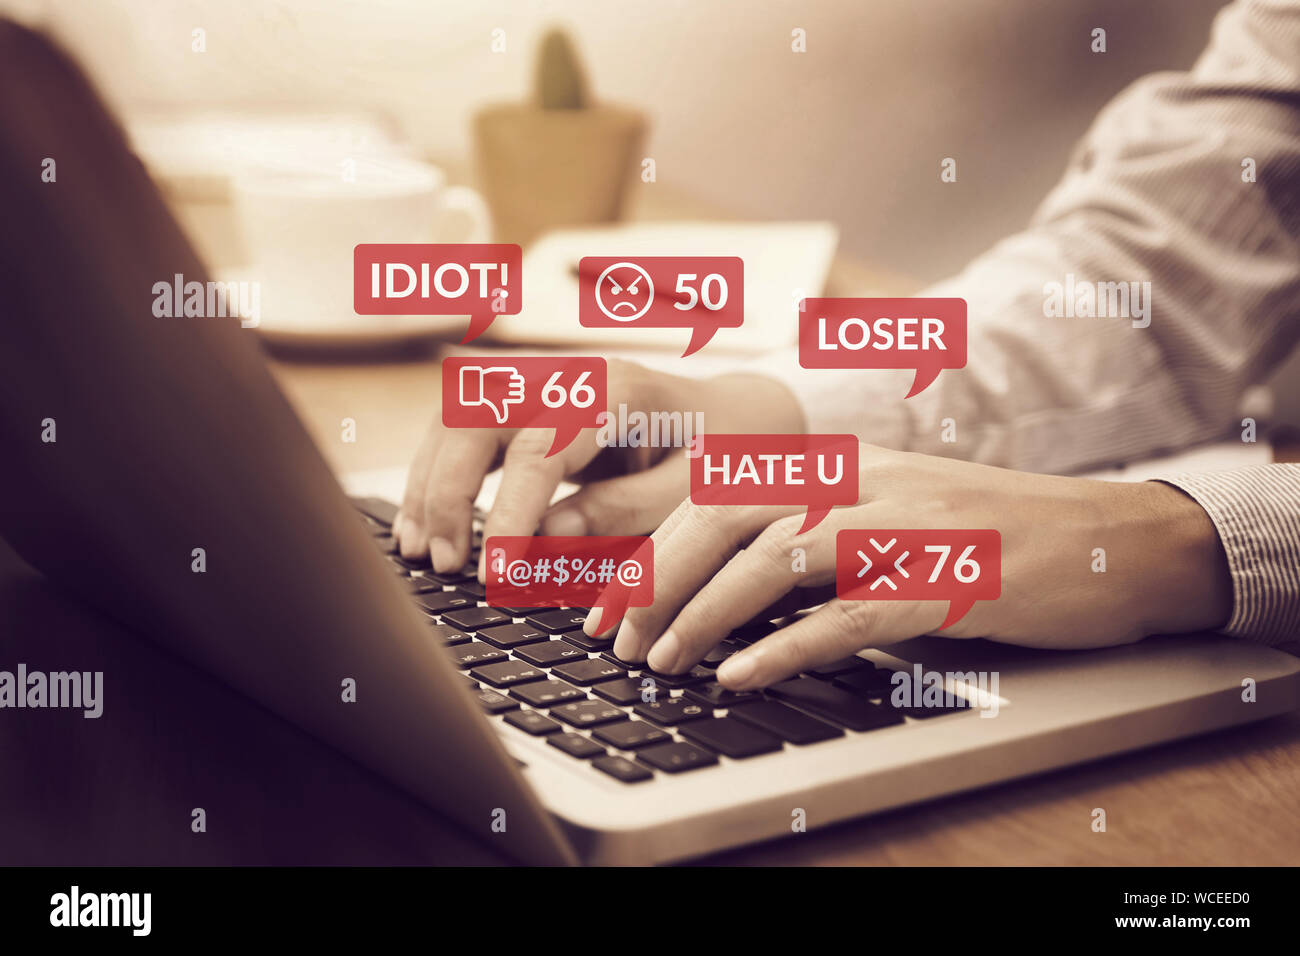 Cyber Bullying concepto. personas utilizando el ordenador portátil portátil para los medios de comunicación social las interacciones con los iconos de notificación de mensajes de odio y comentario en media Foto de stock